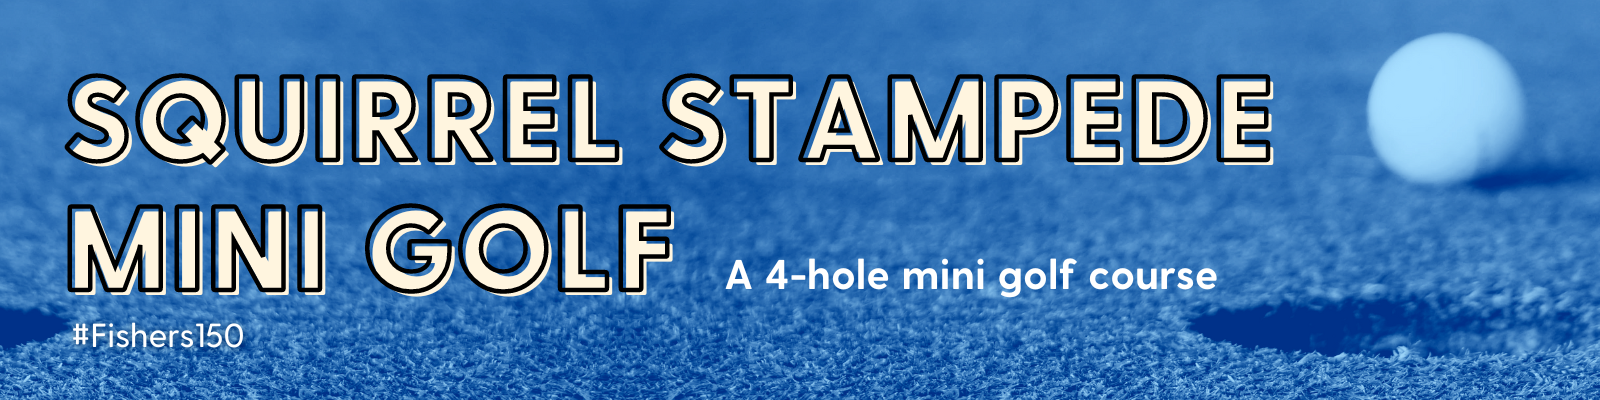 Squirrel Stampede Mini Golf A 4-hole mini golf course